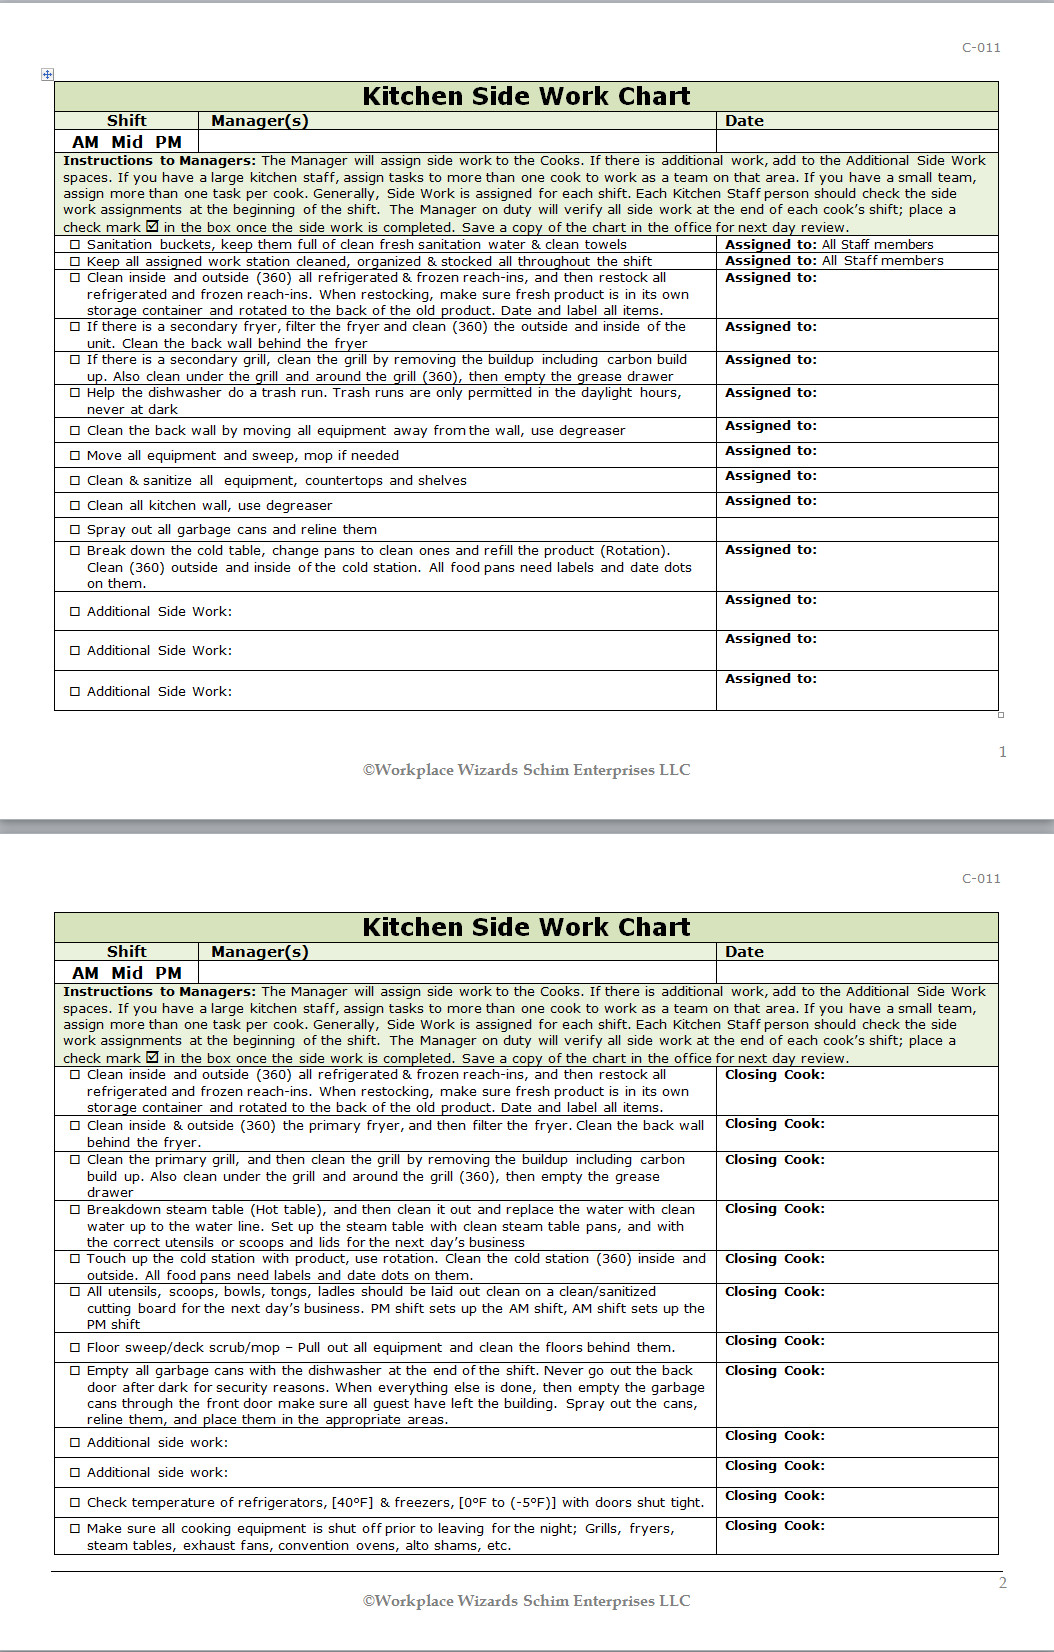 Restaurant Side Work Checklist Template Kitchen Side Work Chart Workplace Wizards